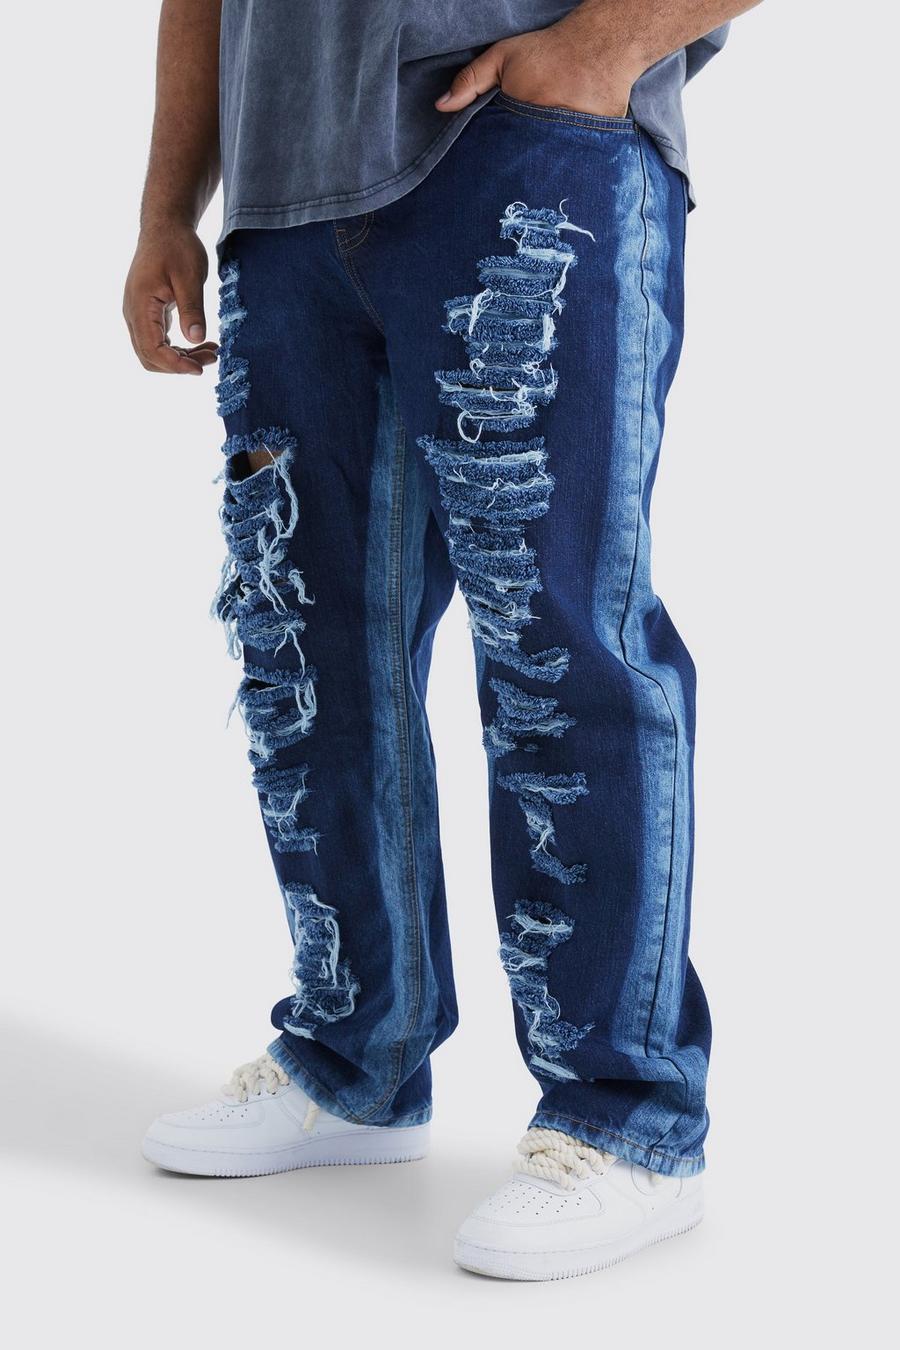 Jeans rilassati Plus Size in denim rigido con pannelli e strappi, Indigo